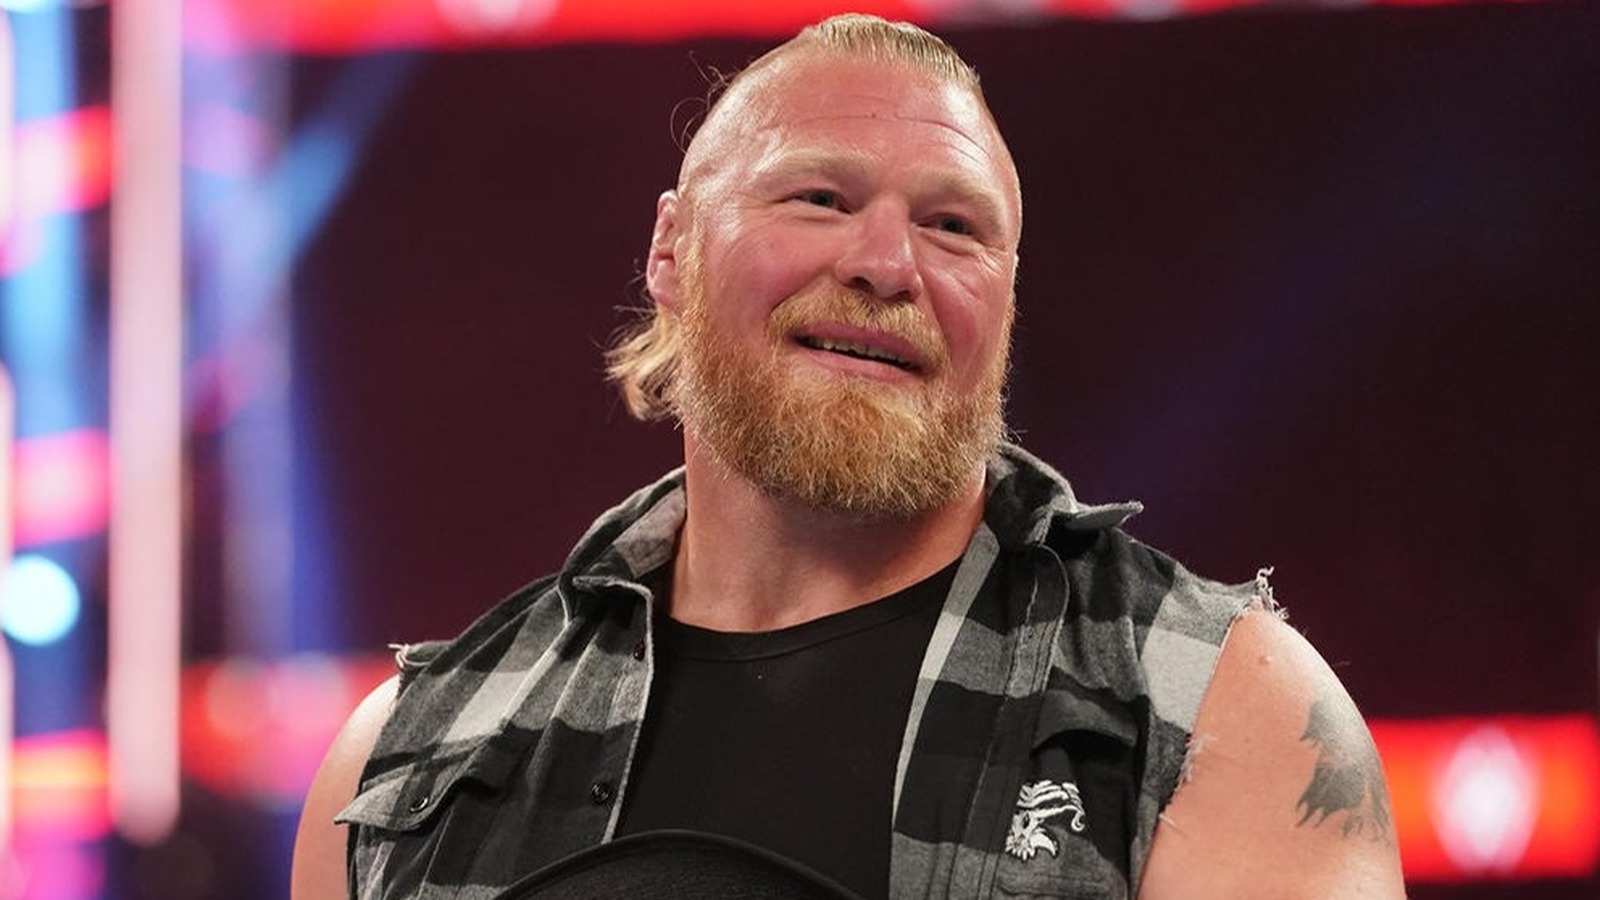 Noticias detrás del escenario sobre la fecha prevista de regreso de Brock Lesnar a la WWE